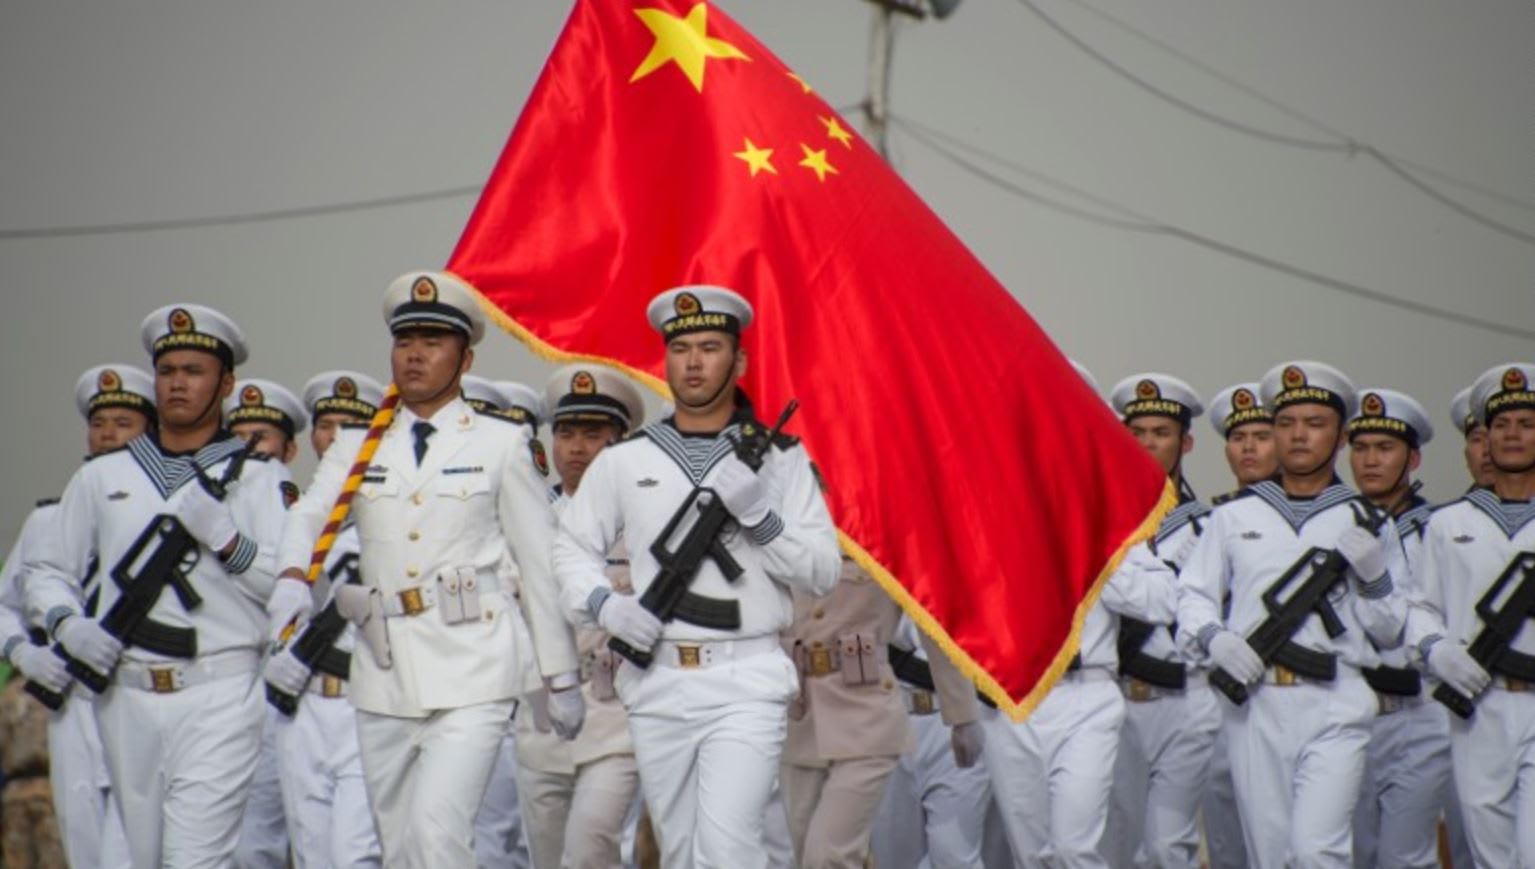 بعد سحب قطر قواتها من حدودها.. الصين ترسل قوات إلى جيبوتي وتؤسس أول قاعدة عسكرية لها في الخارج